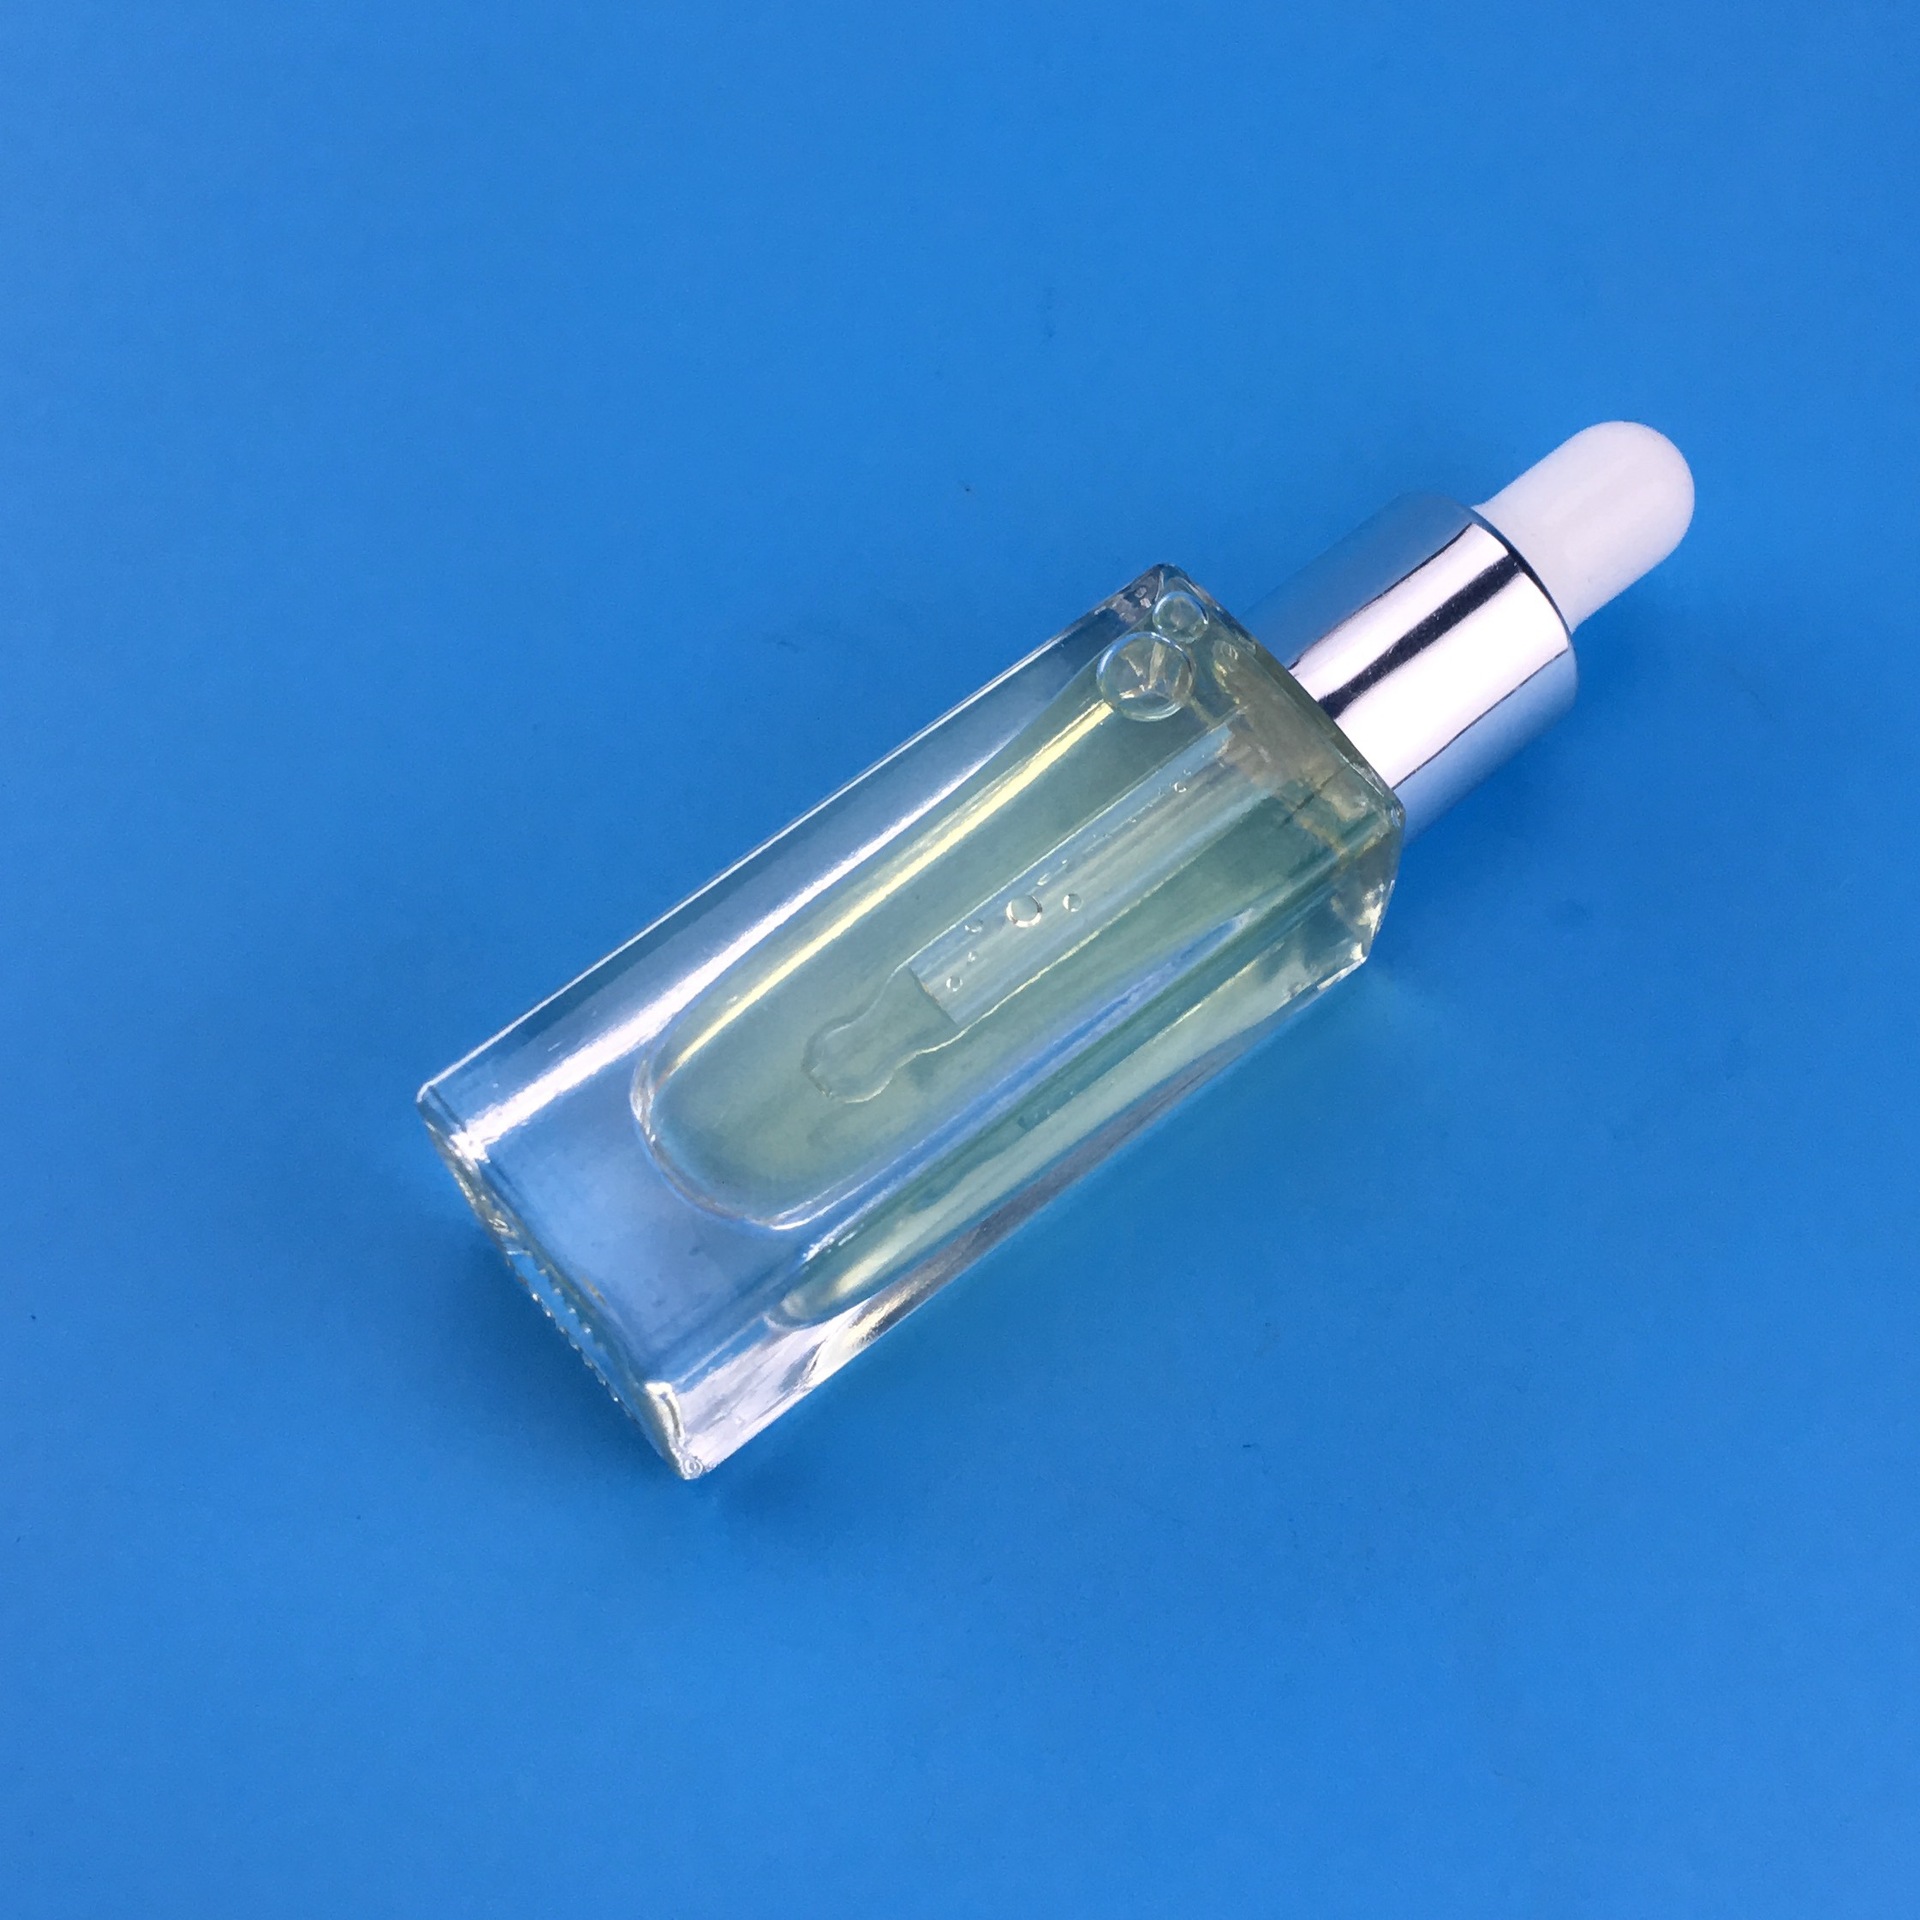 化妆品瓶 7ml玻璃瓶 滴管瓶 透明精油瓶 精华液瓶 试用分装瓶示例图2